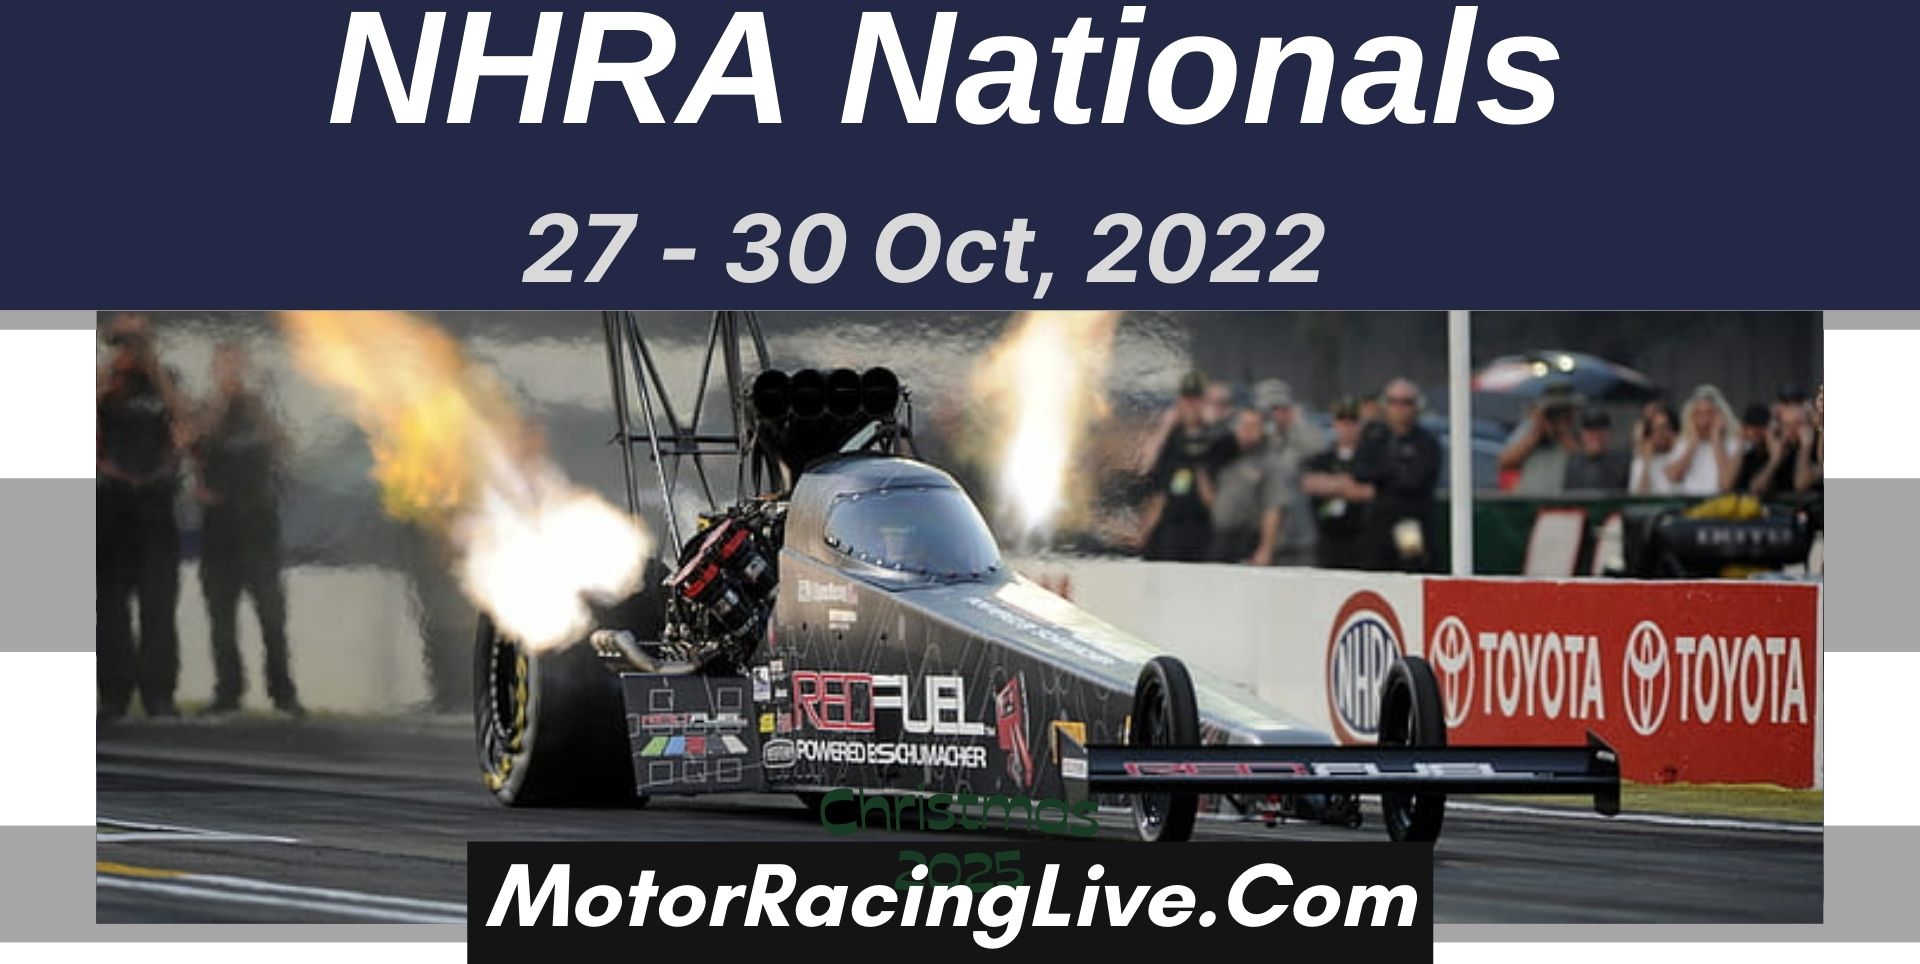 NHRA Nationals 2022 Live Stream